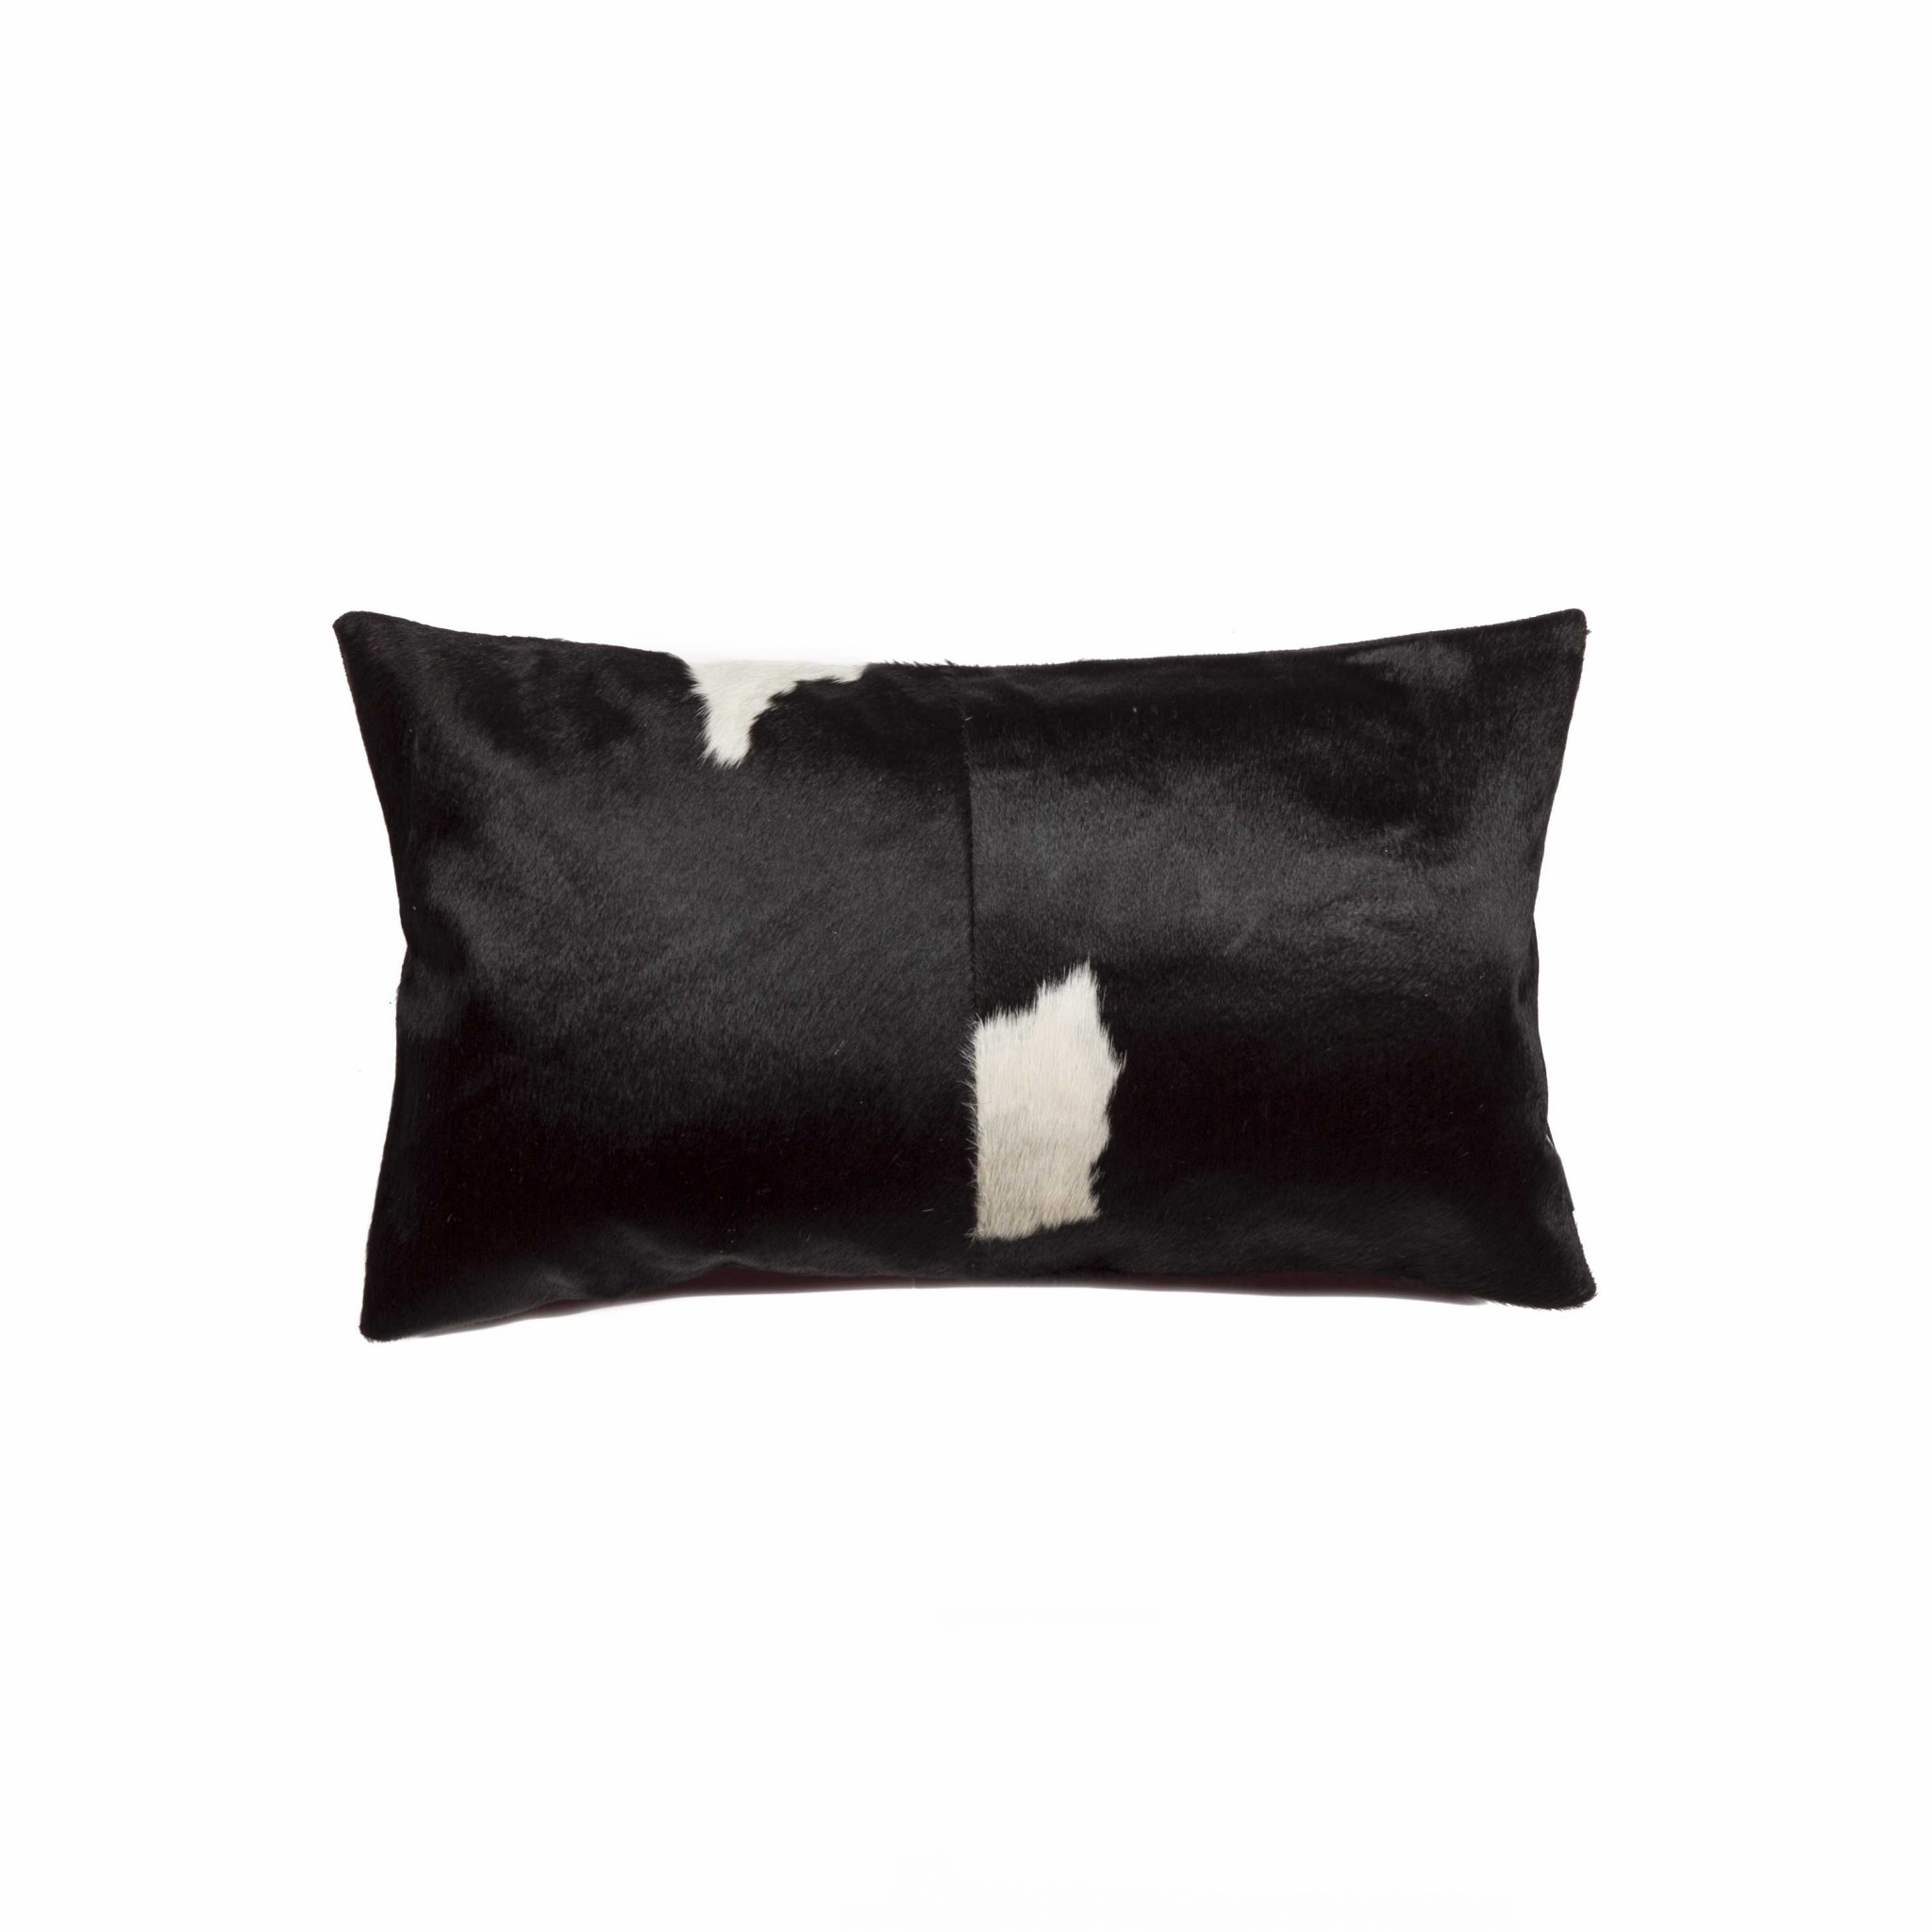 12" x 20" x 5" Black & White Torino Kobe Cowhide - Pillow